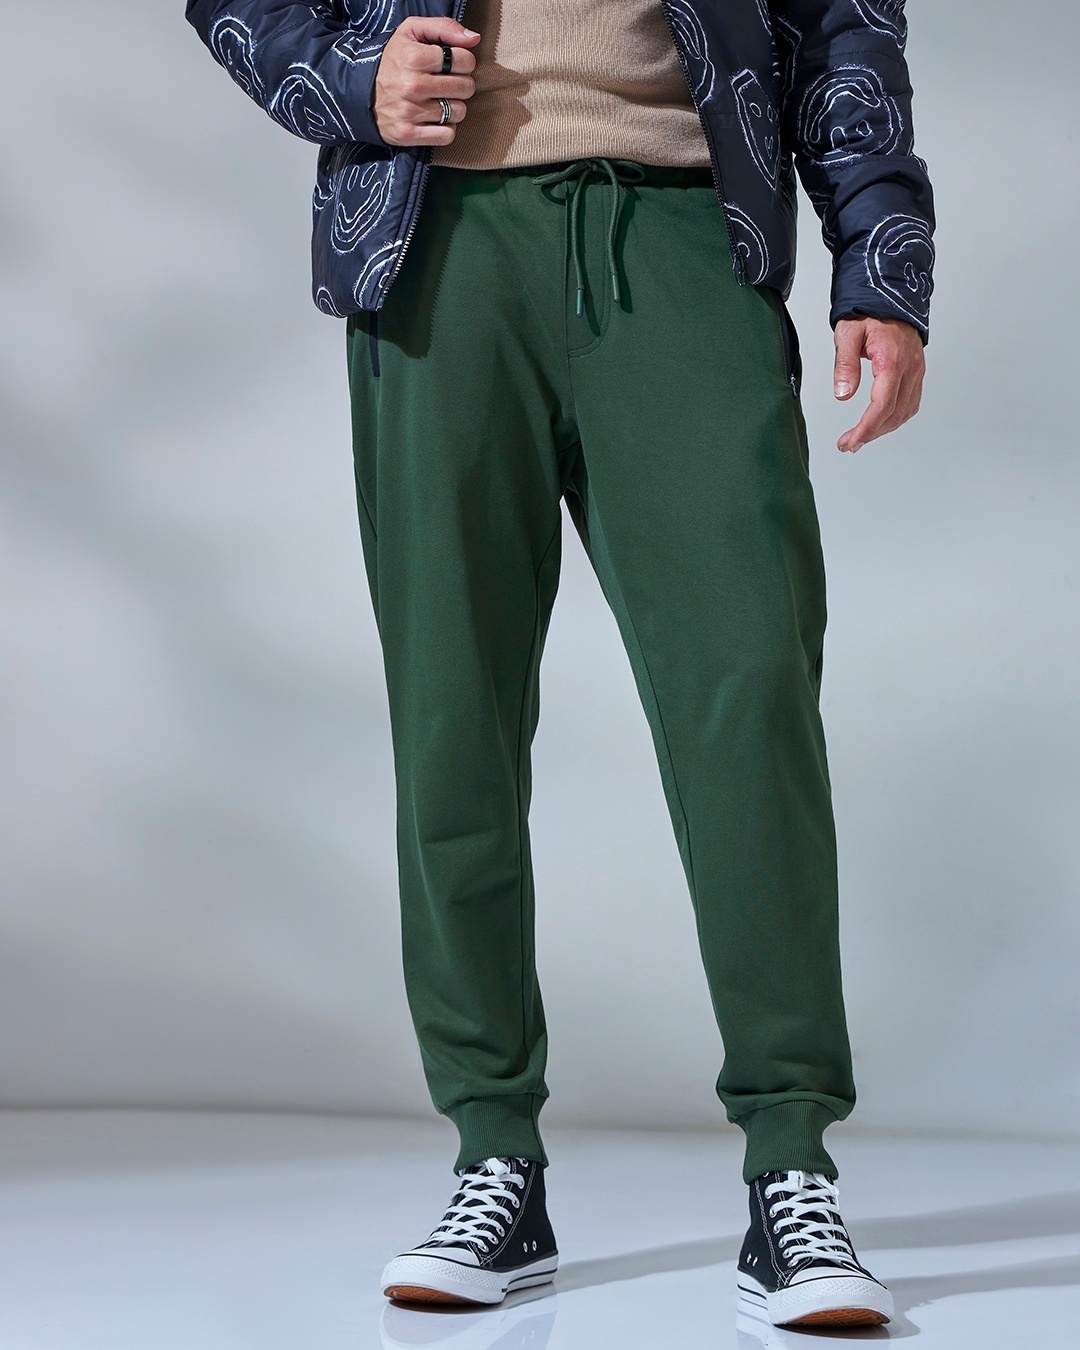 Trendy Green Jogger Pants - Satin Joggers - Comfy Joggers #ad #Jogger,  #Paid, #Green, #Trendy,… | Olive pants outfit, Olive green pants outfit, Green  joggers outfit